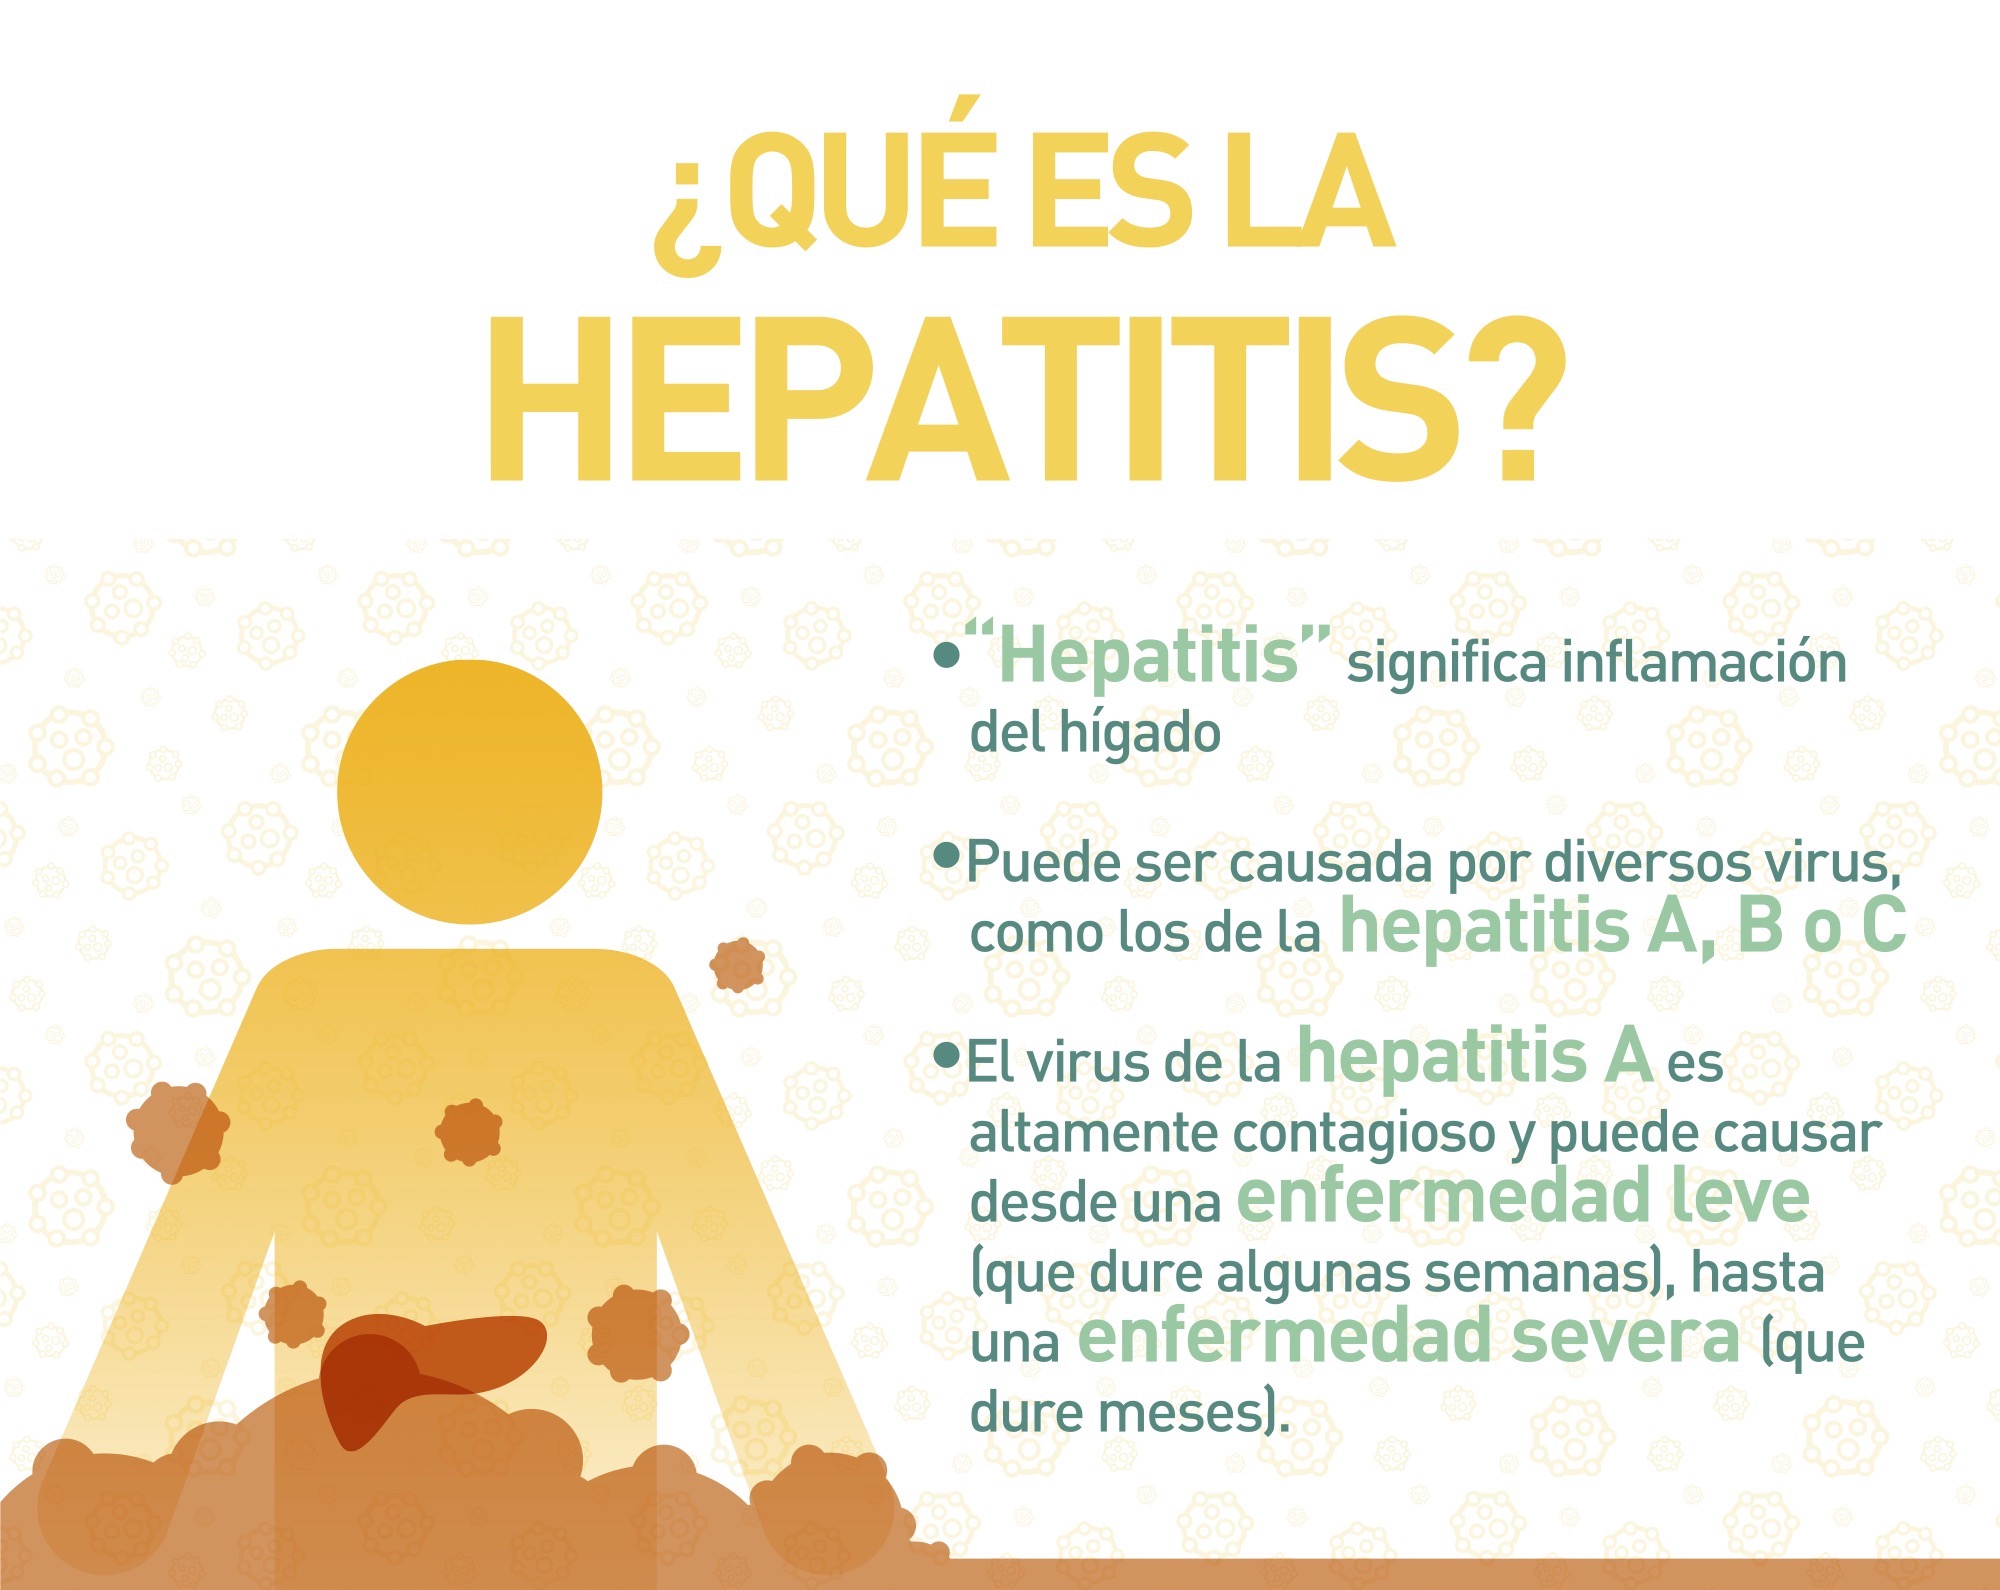 ¿Qué es la Hepatitis? "Hepatitis" significa inflamación del hígado. Puede ser causuada por diversos virus, como los de la hepatitis A, B o C. El virus de la hepatitis A es altamente contagioso y puede causar desde una enfermedad leve (que dure algunas semanas), hasta una enfermedad severa (que dure meses) 